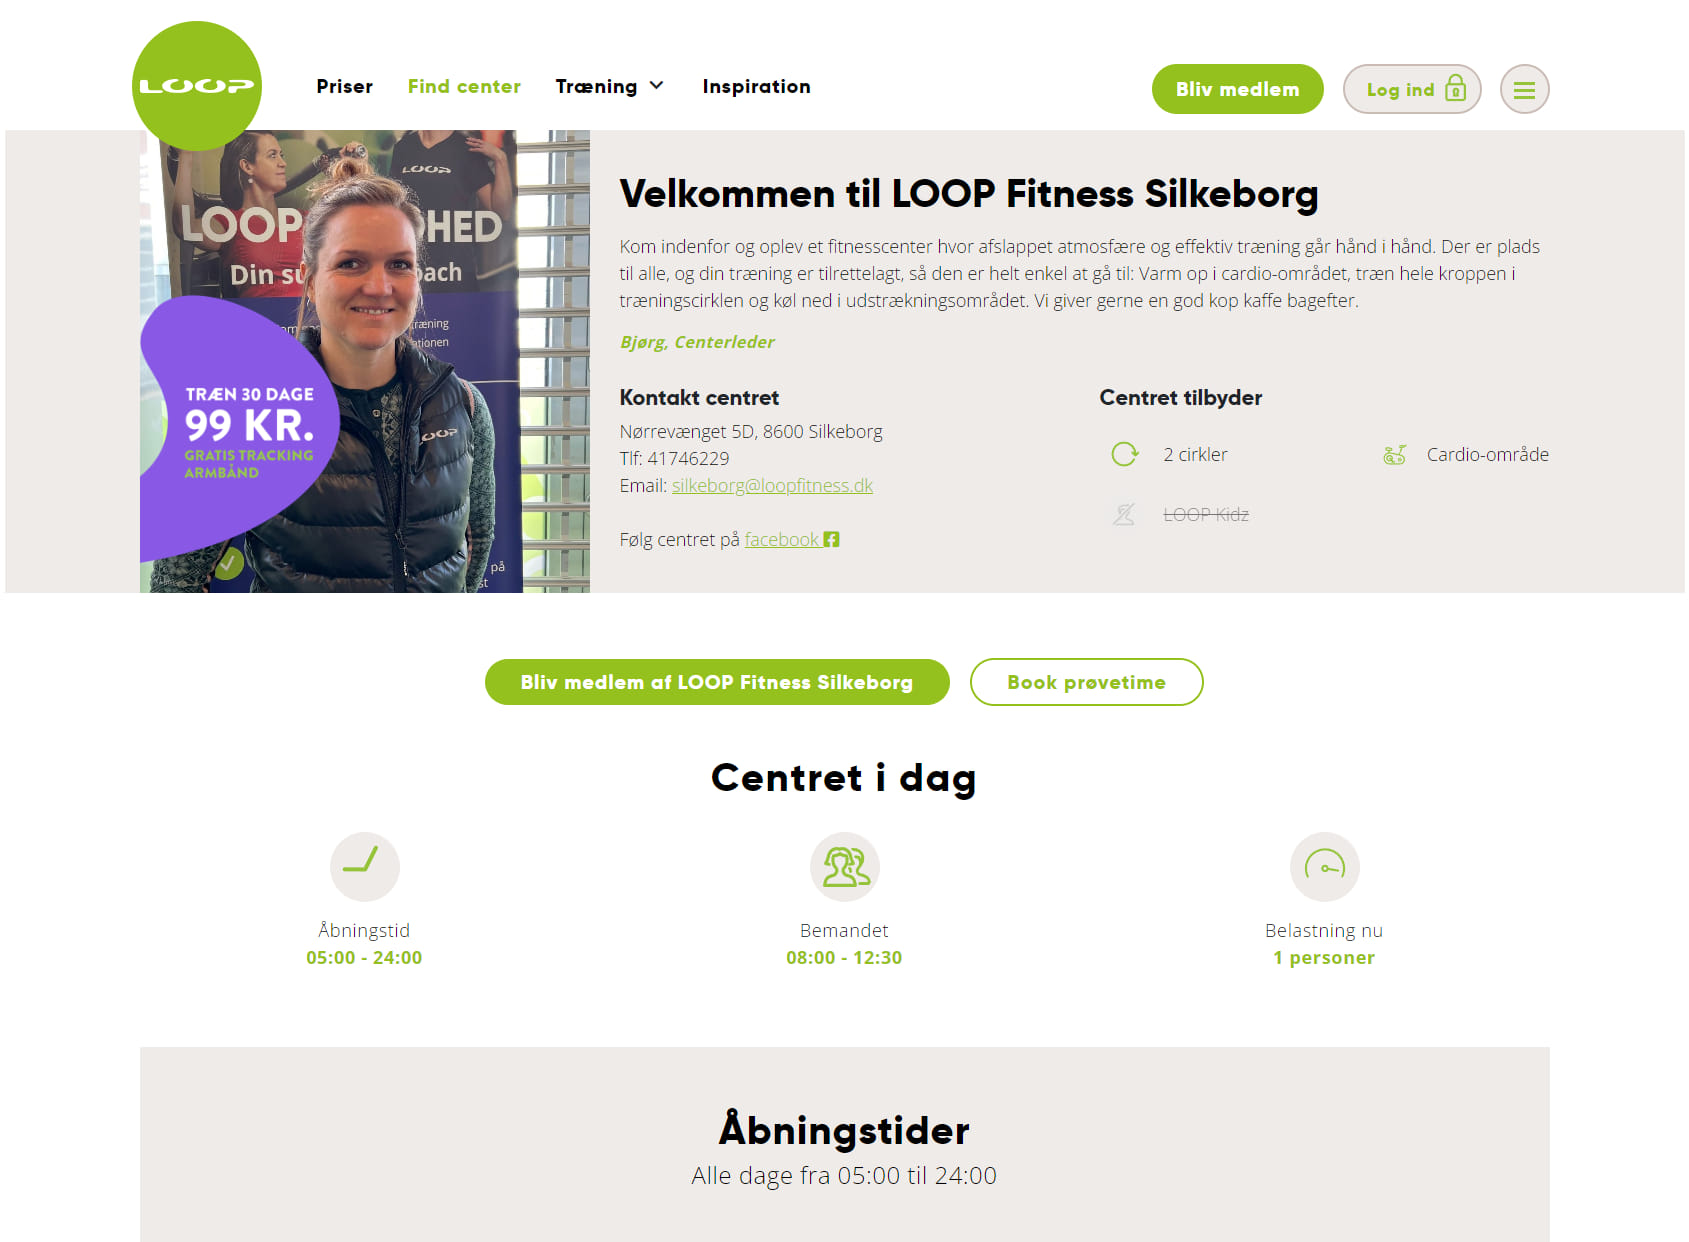 LOOP Fitness Silkeborg